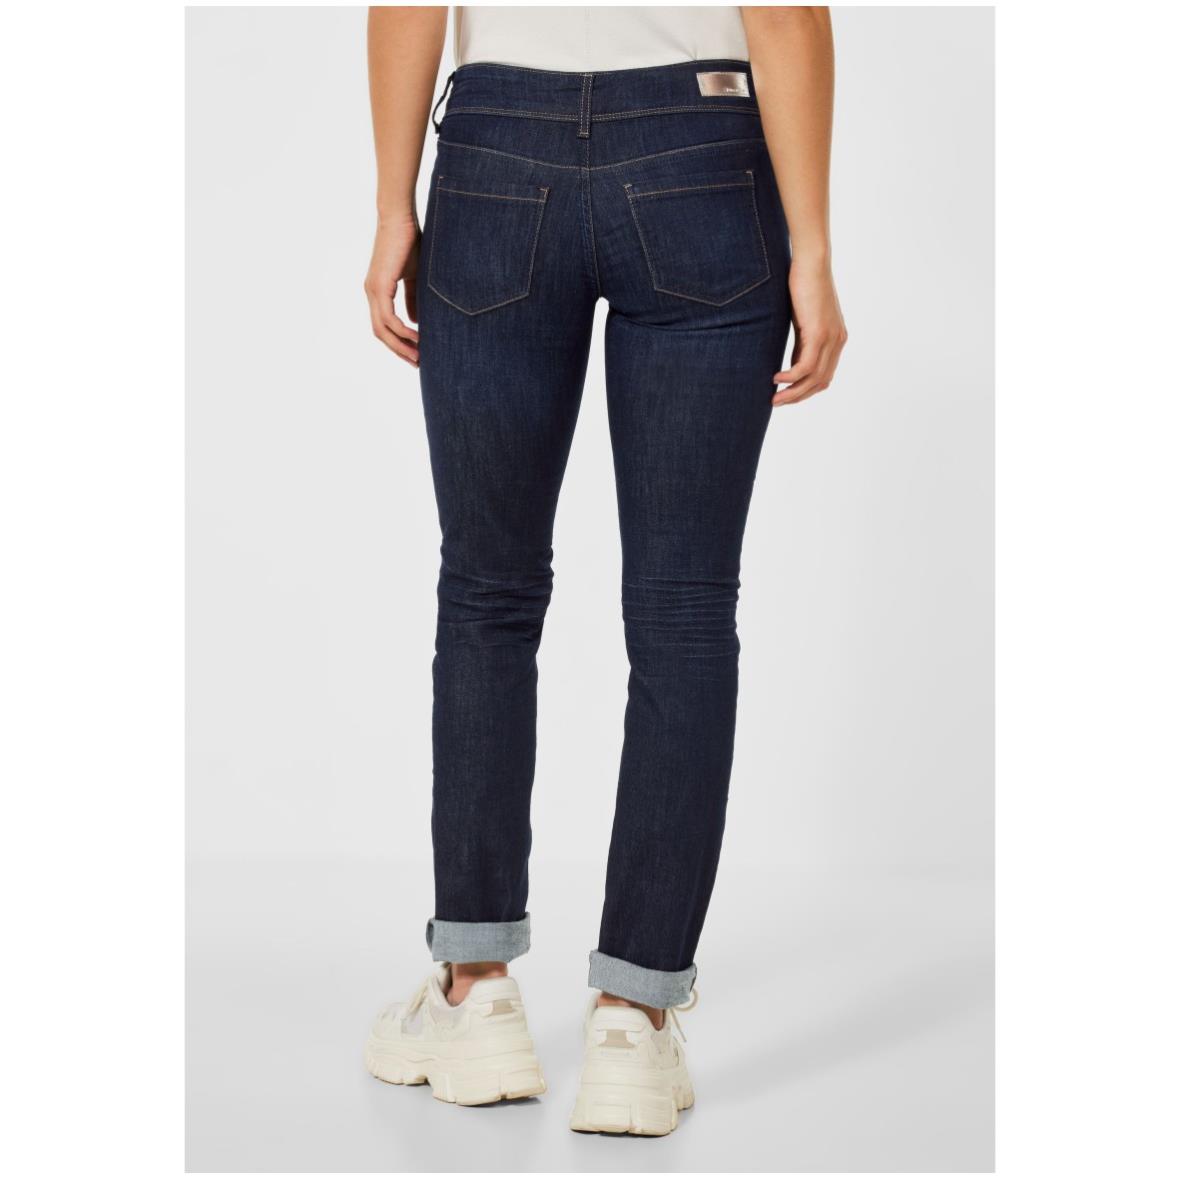 Damen Siemers Street Casual Jane - Fit One Jeans Online-Shop